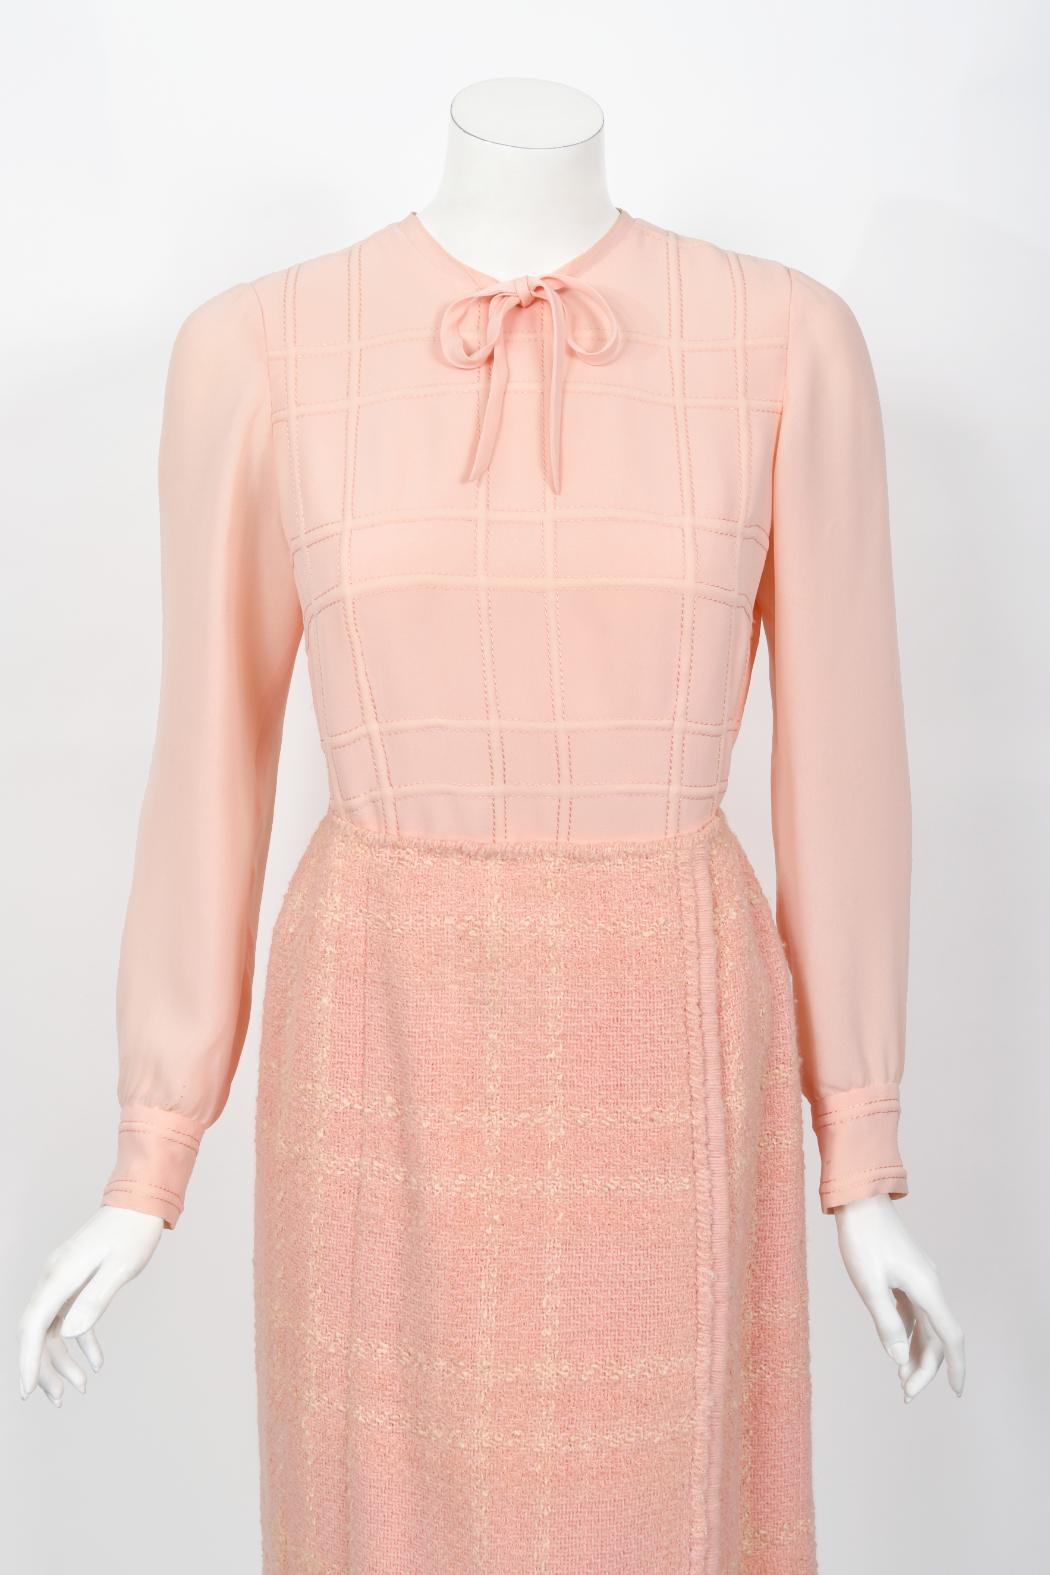 Chanel Haute Couture documenté veste chemisier jupe chemisier en laine rose vintage 1973 en vente 11